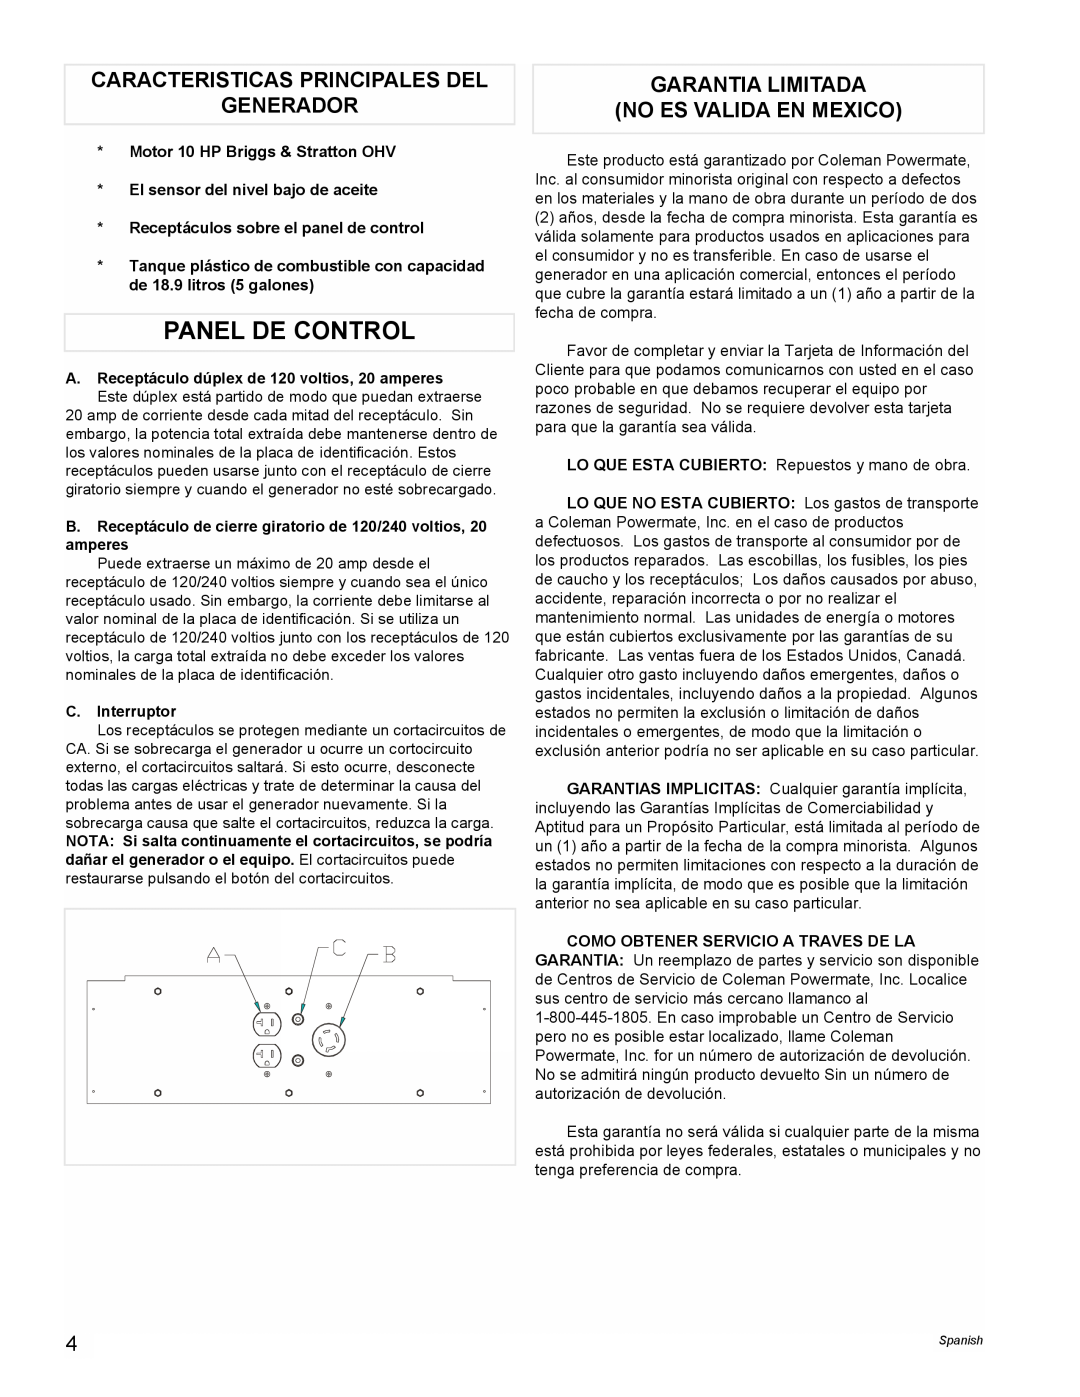 Powermate PMA545004 Panel De Control, Caracteristicas Principales Del Generador, Garantia Limitada No Es Valida En Mexico 